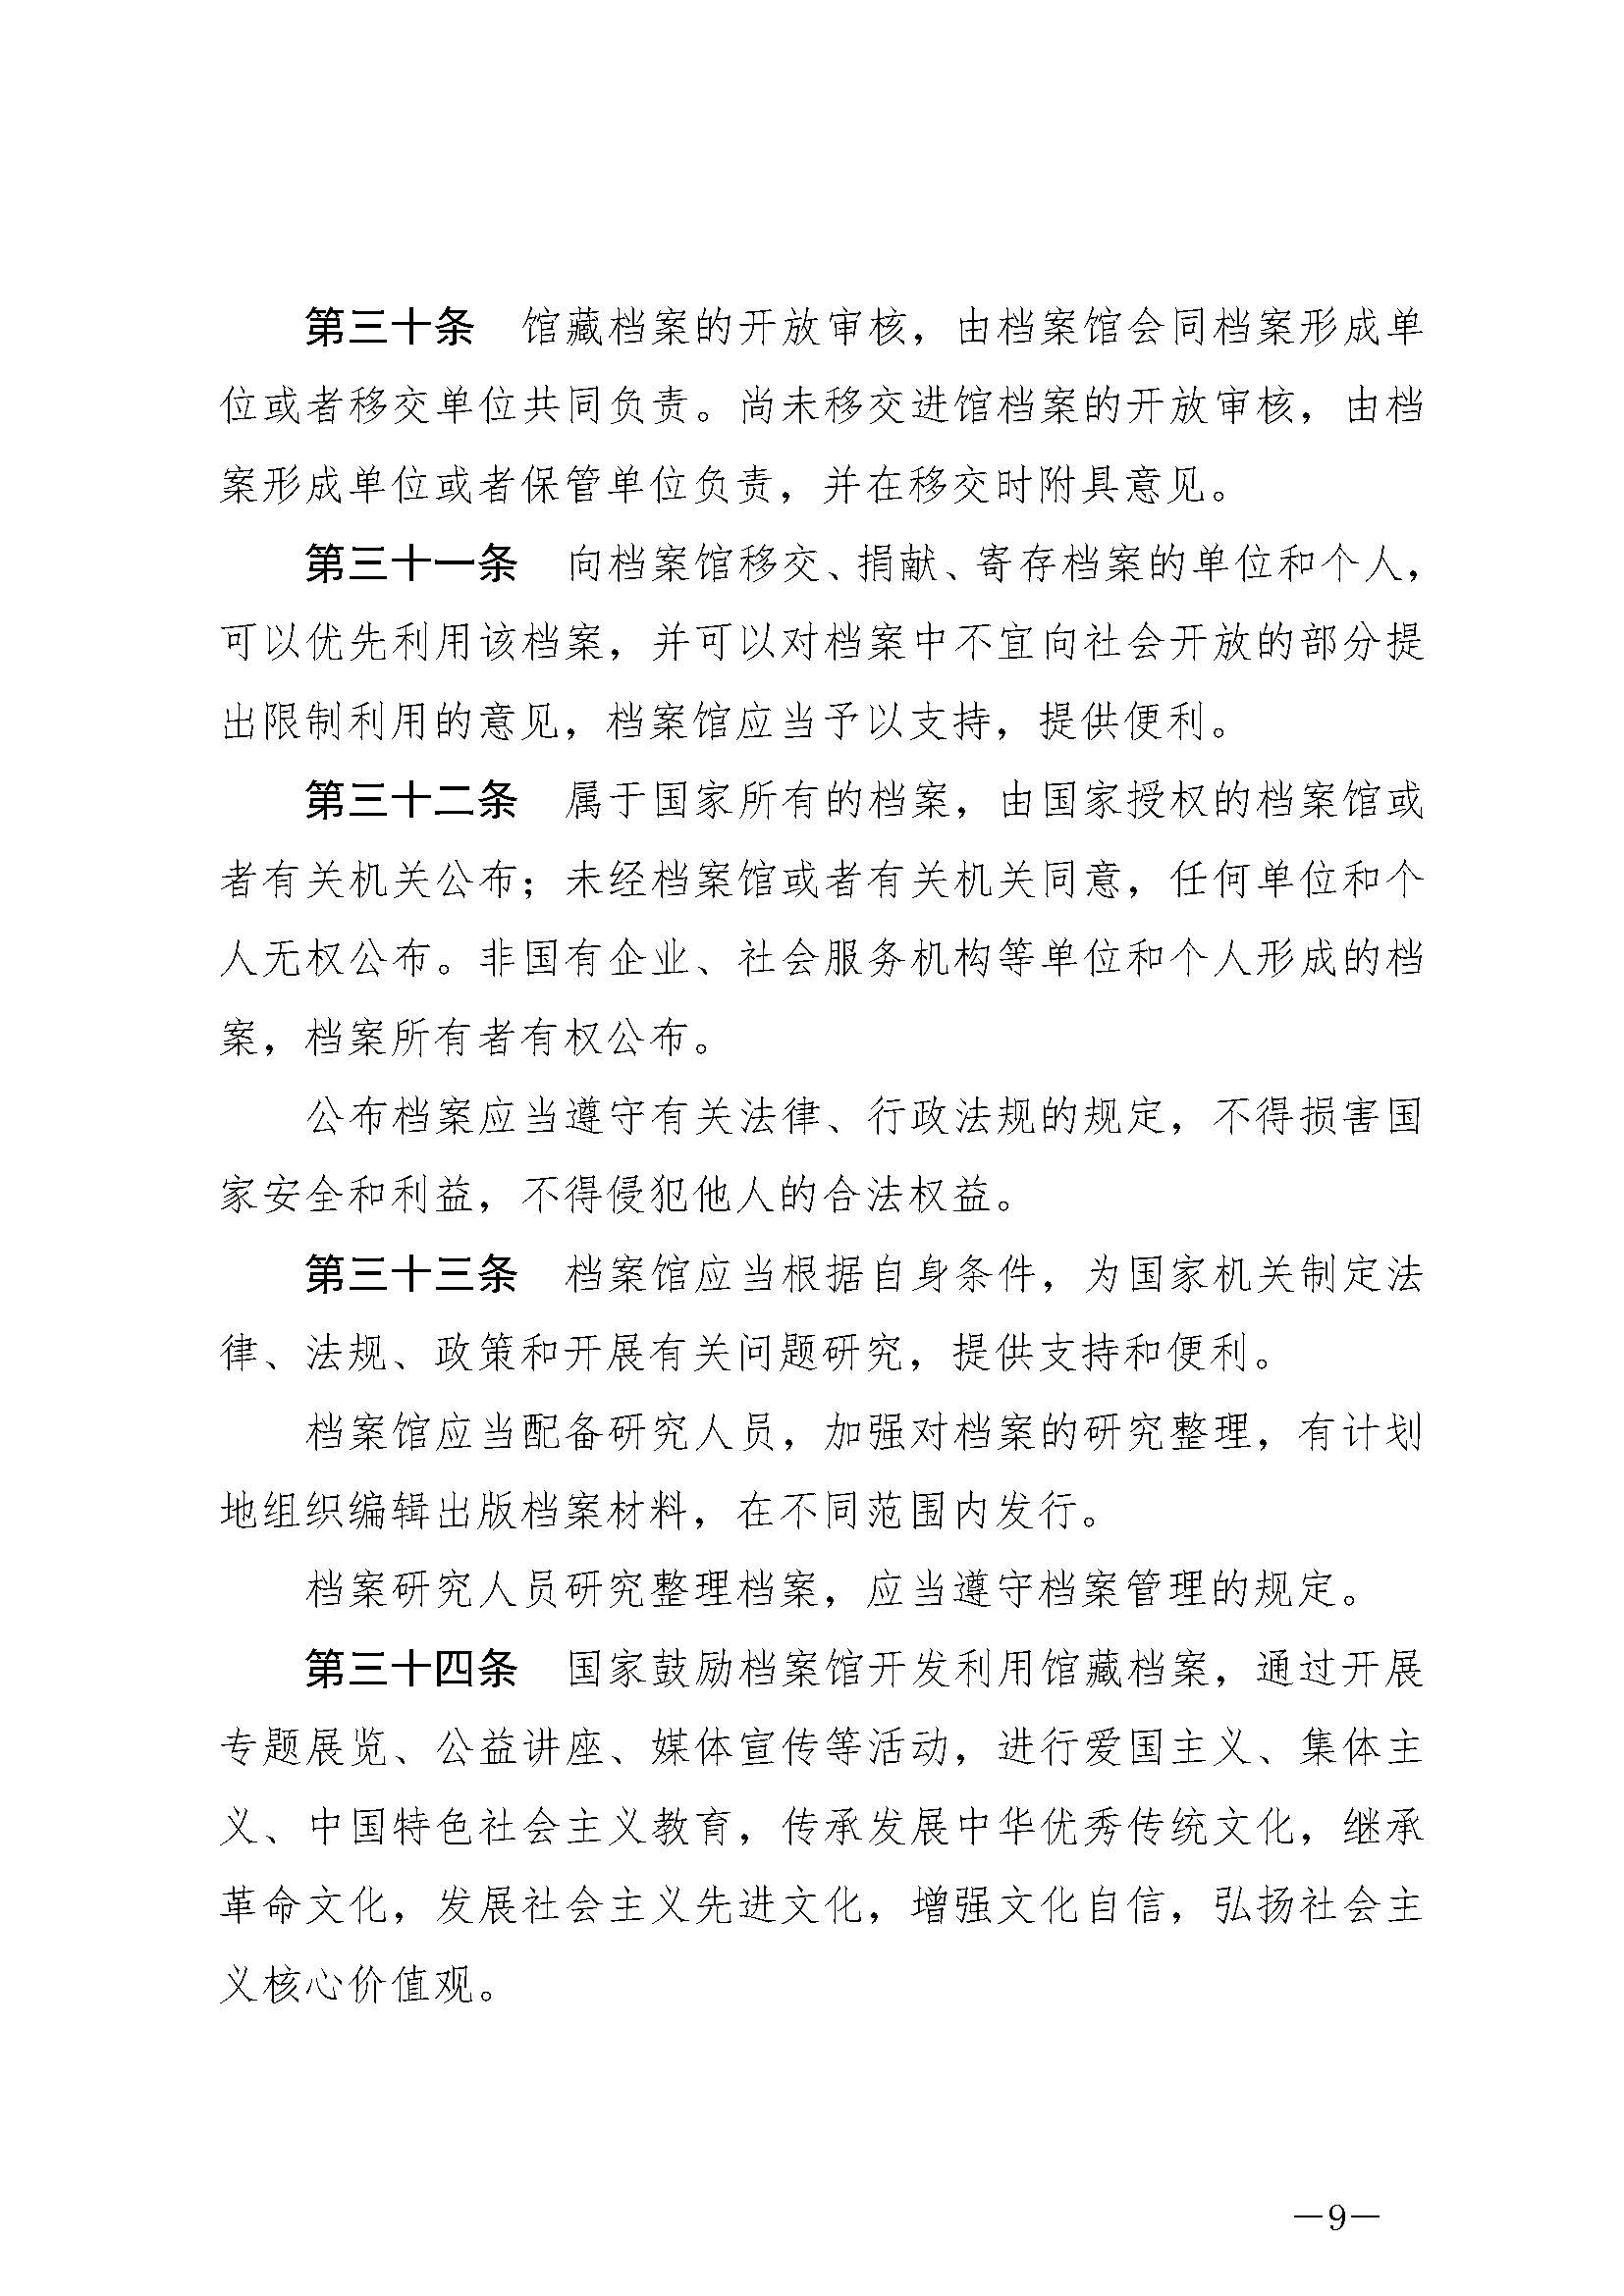 《中华人民共和国档案法》_页面_09.jpg